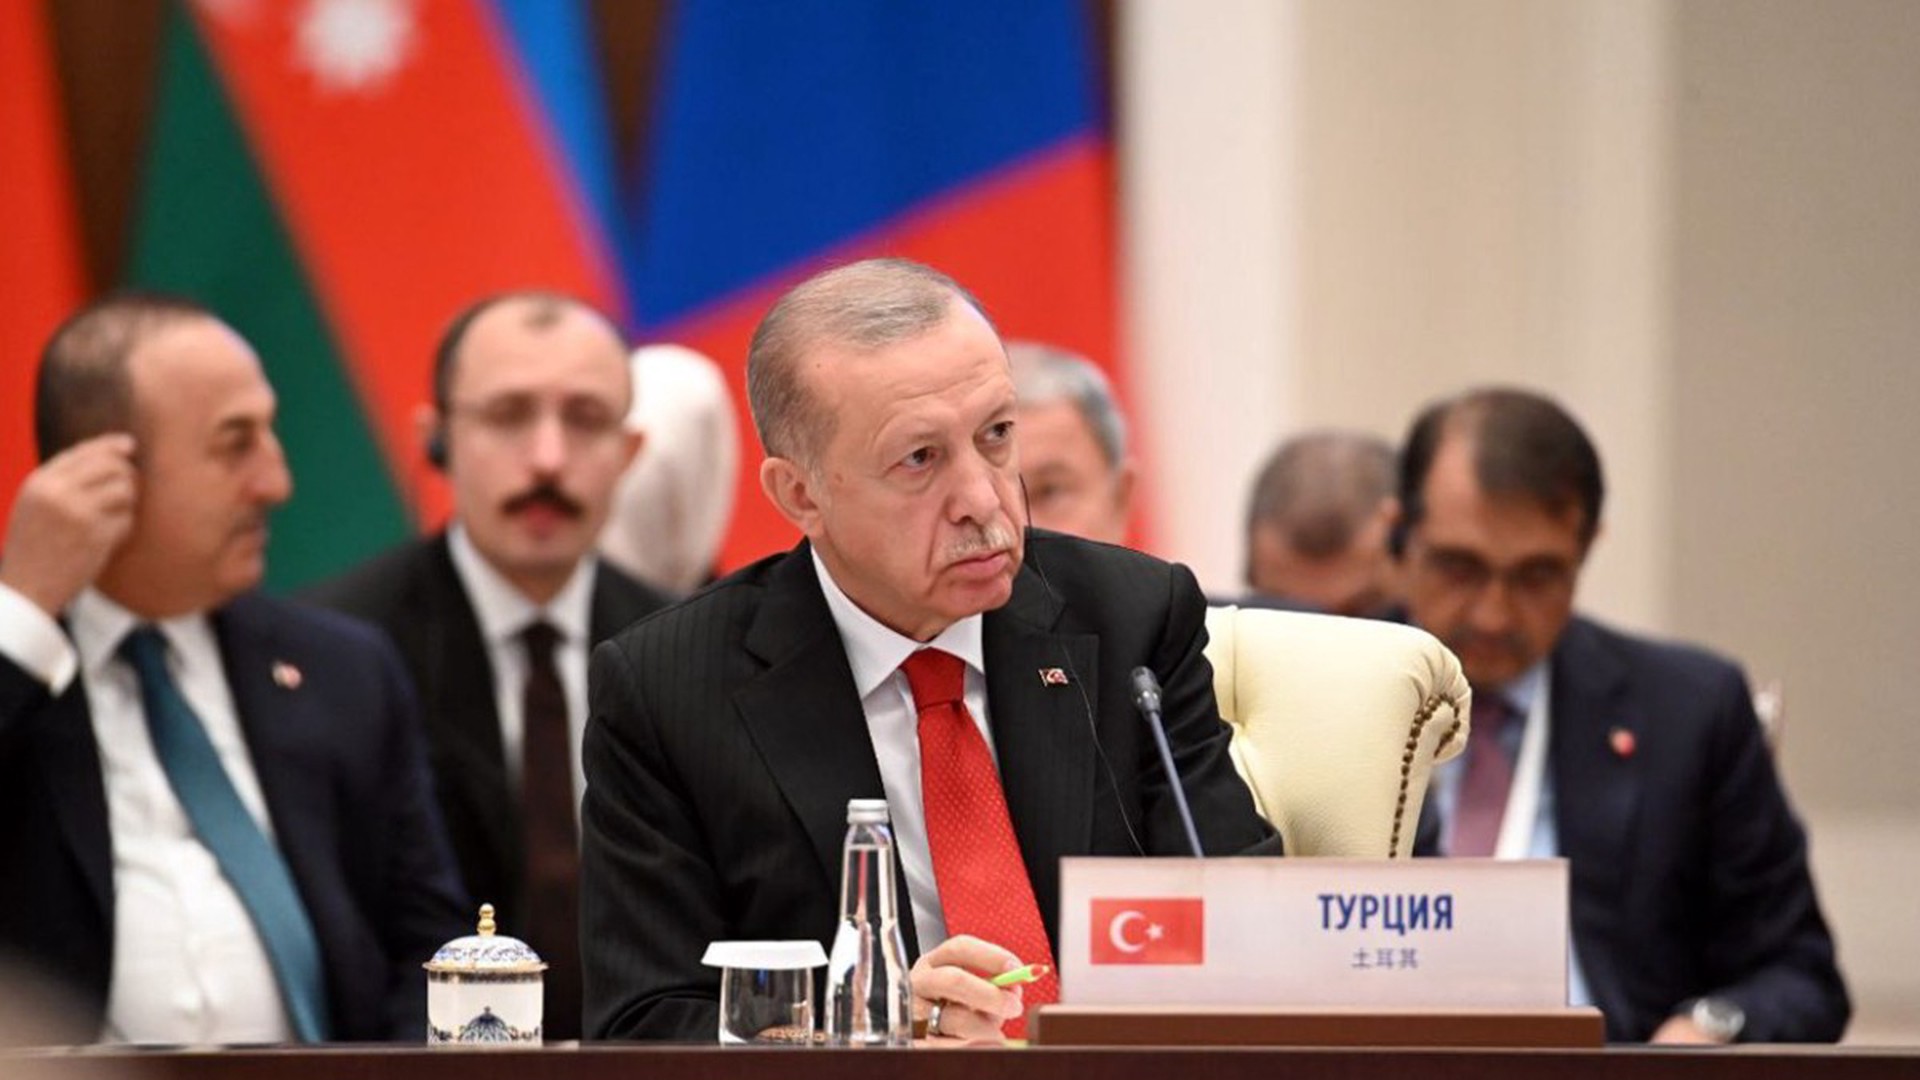 Эрдоган на встрече с Путиным намерен попросить о скидке на газ